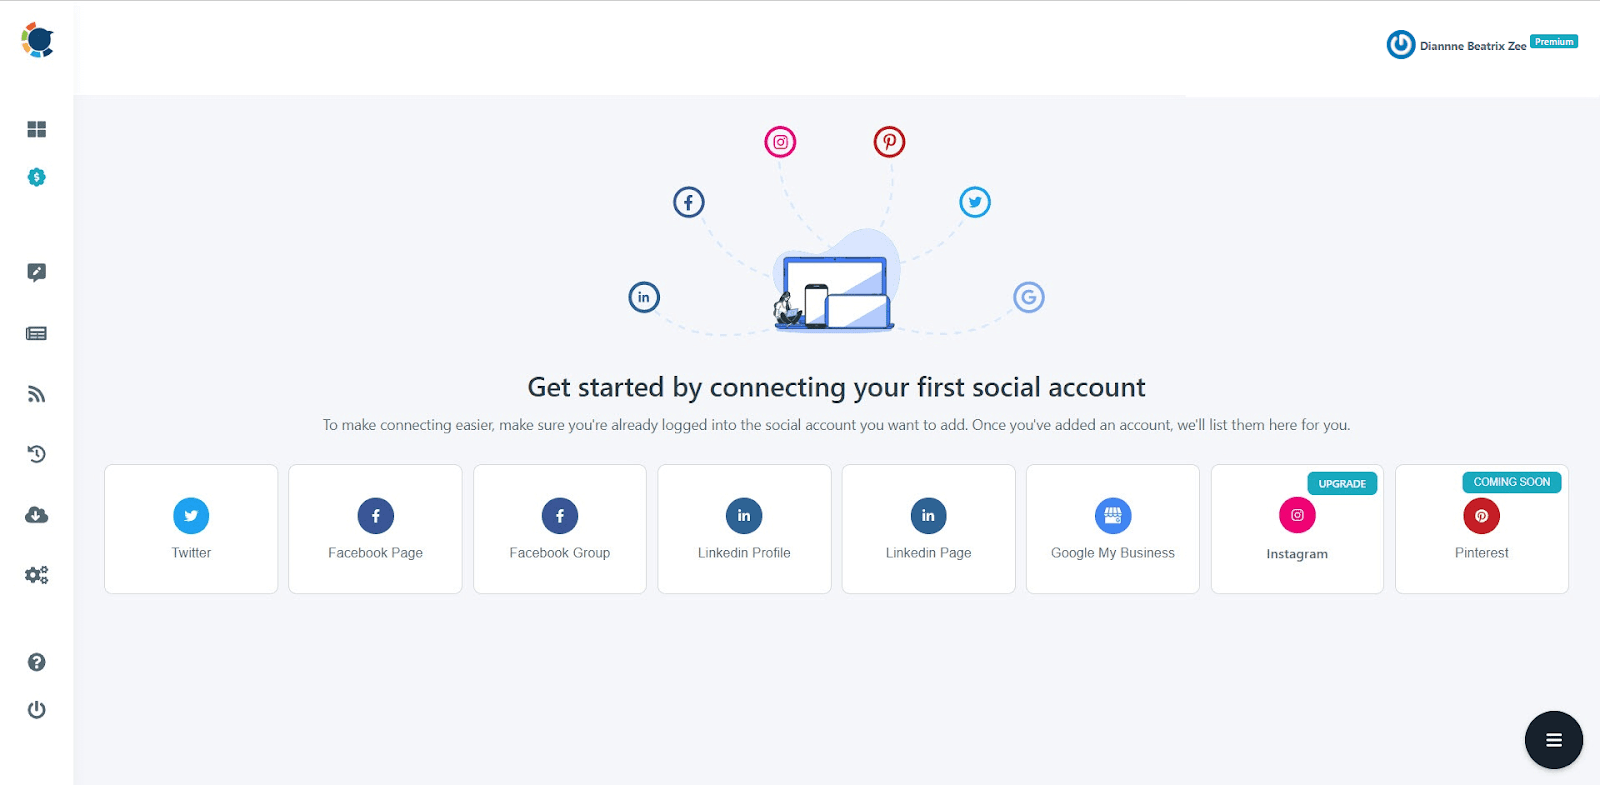 می توانید حساب های خود را در ابزارهای اصلی رسانه های اجتماعی مدیریت کنید.